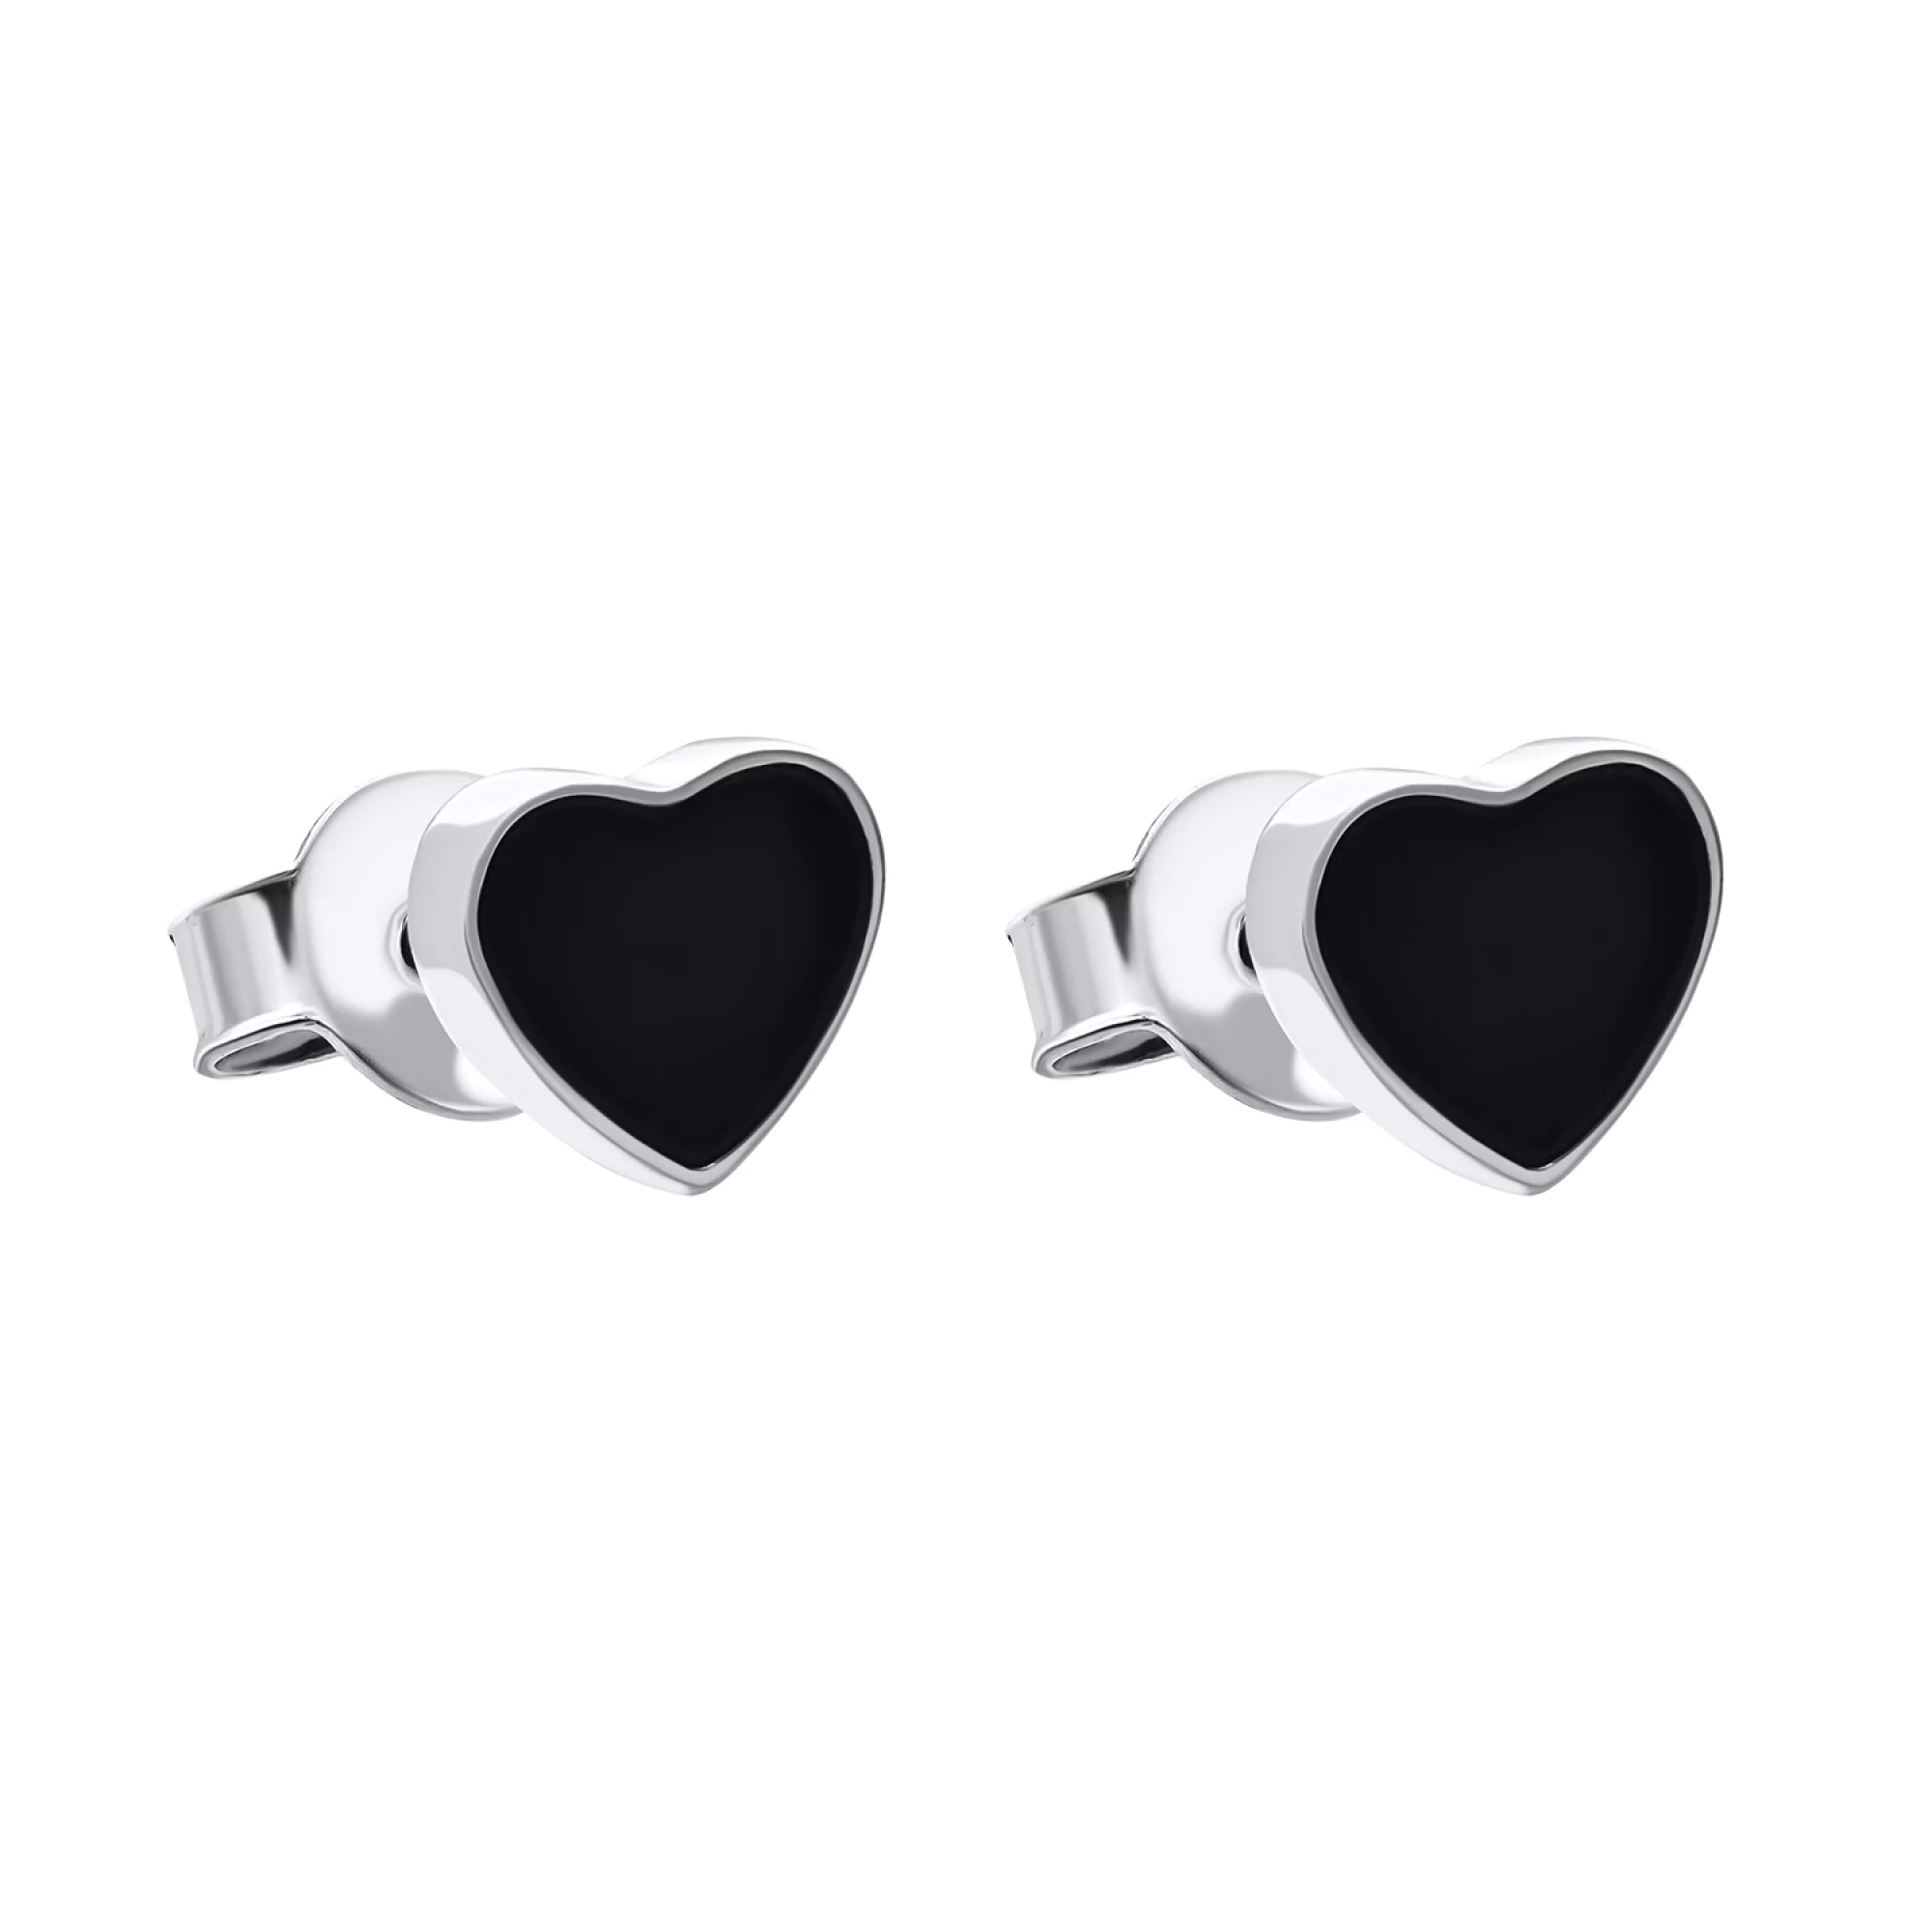 Срібні сережки-гвоздики з емаллю "Серце" - 1548885 – зображення 1